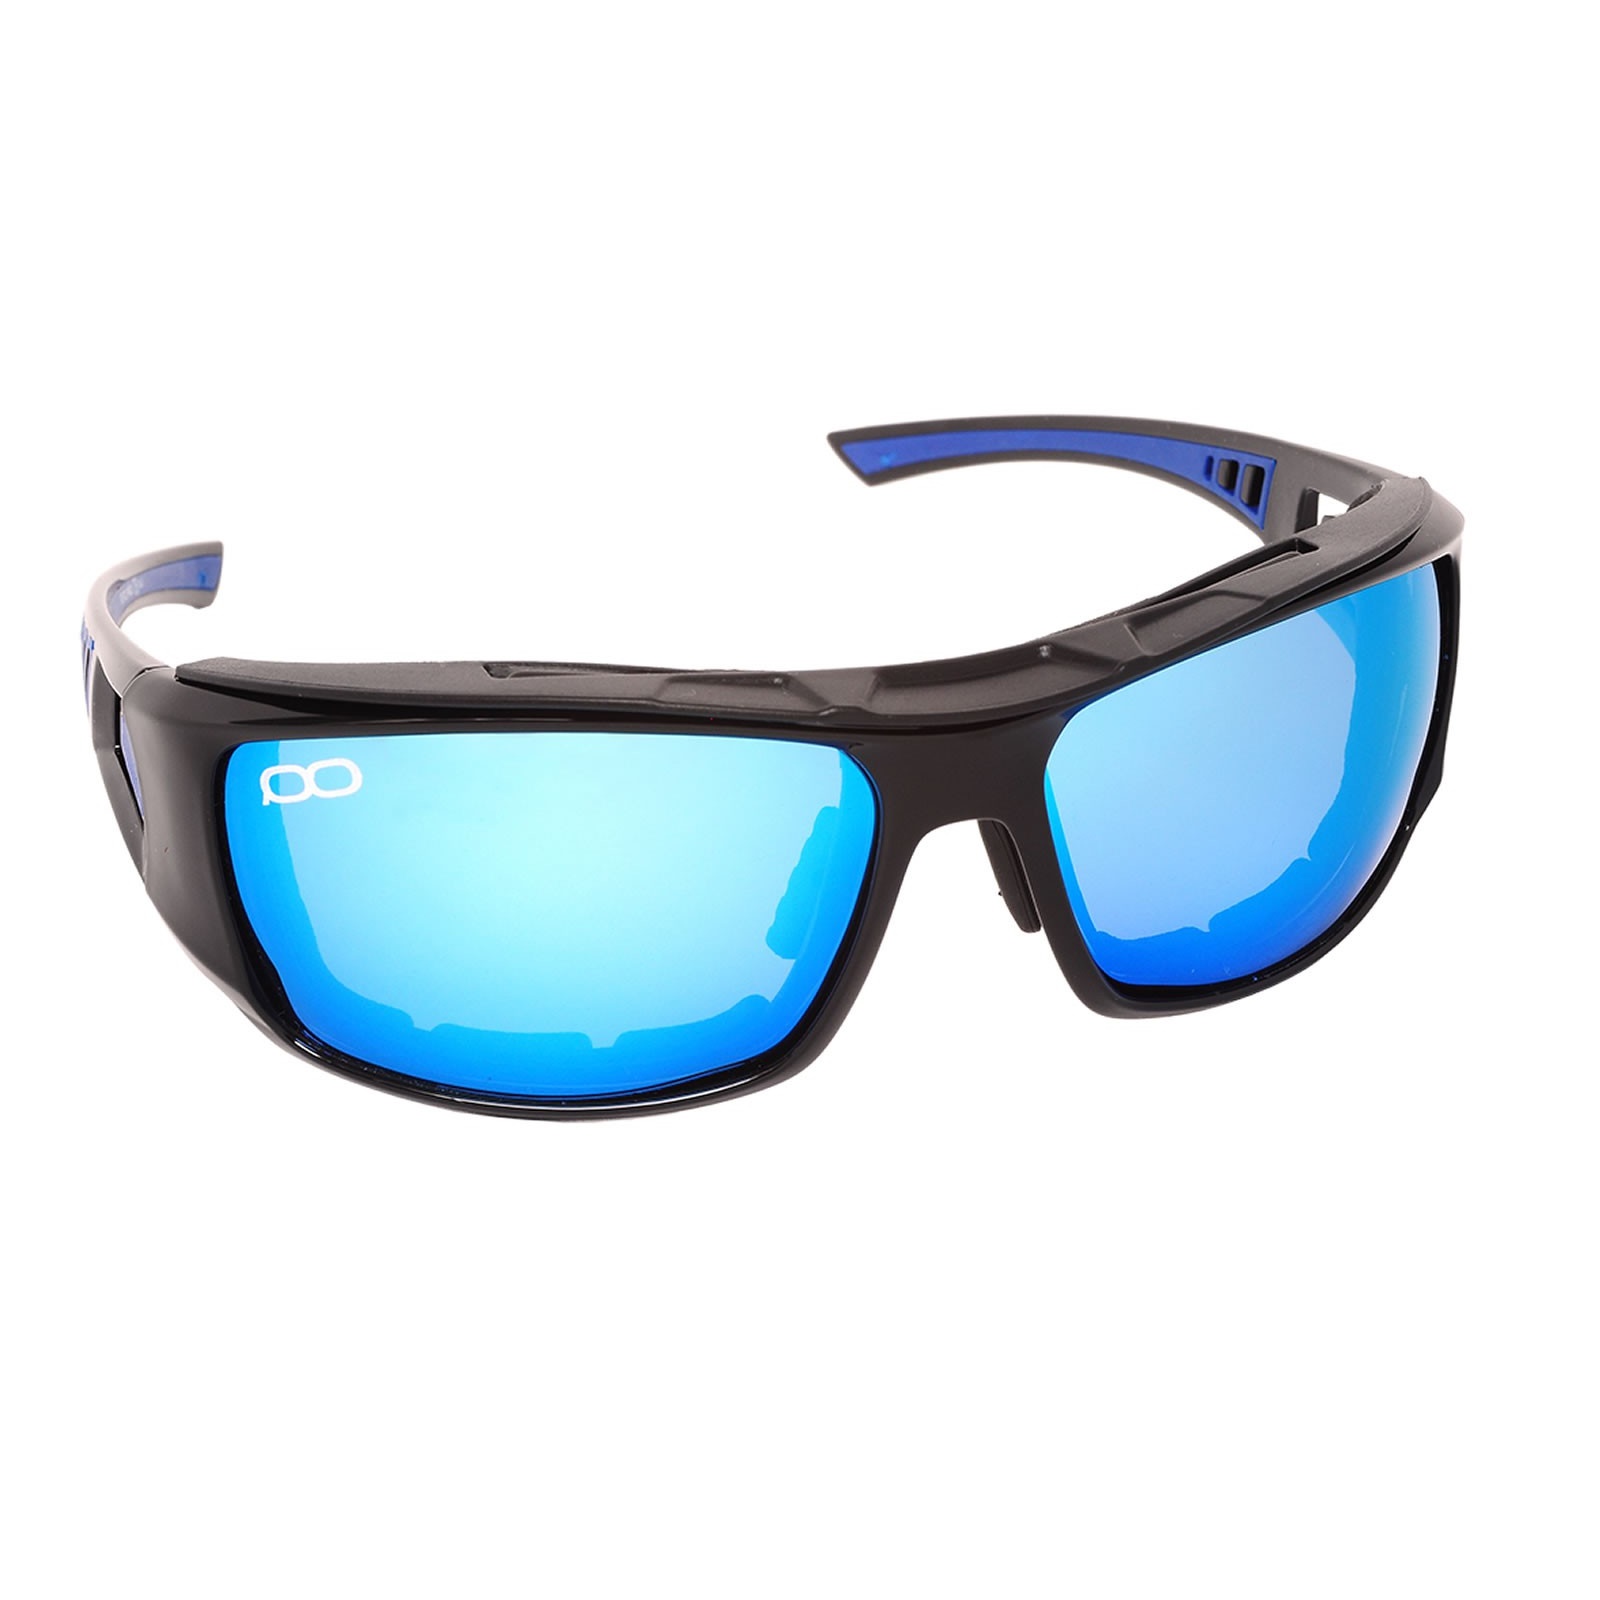 Солнцезащитные очки с поляризацией looktrue. Очки FGPO.Pro. FGPO pro1 Revo Ice Blue. Поляризационные очки Aqua 905. Очки поляризационные Leech Eyewear atw6 Blue.